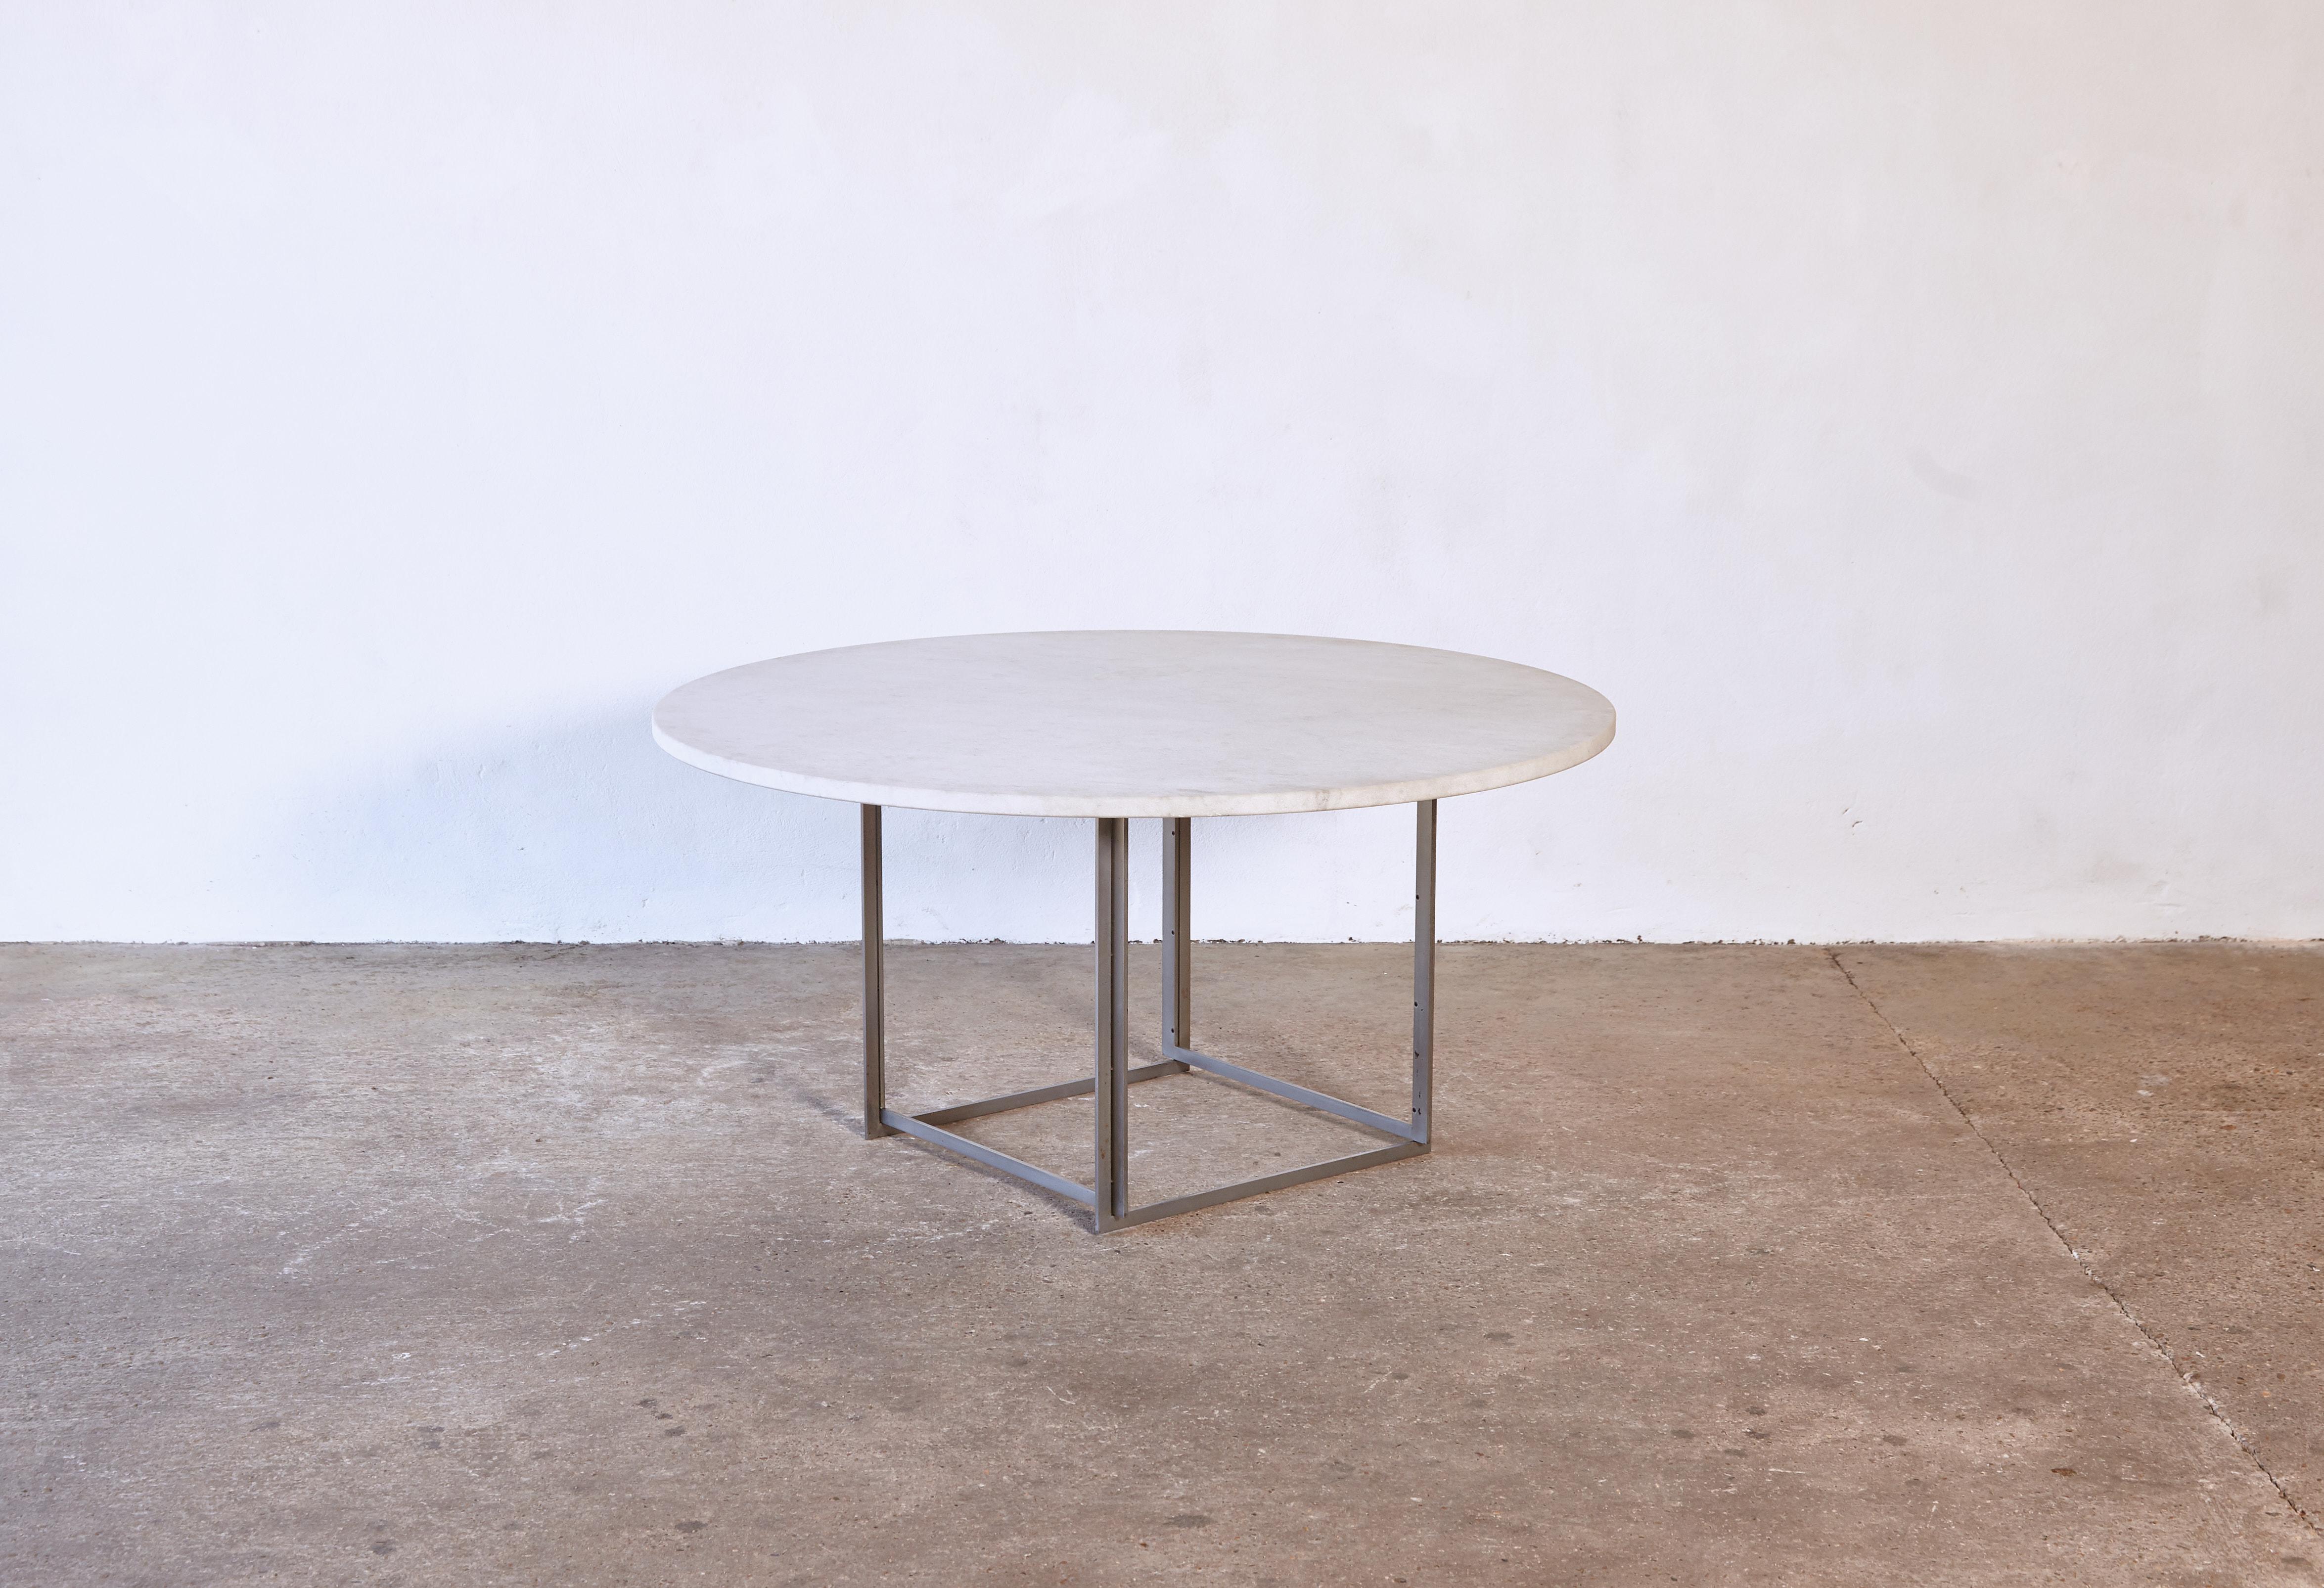 Table de salle à manger ronde Poul Kjaerholm PK-54 par E. Kold Christensen, Danemark, années 1960. Plateau en marbre Steele roulé et base en acier chromé mat. Étampe avec la marque du fabricant EKC. Une contremarche en bois amovible a été ajoutée